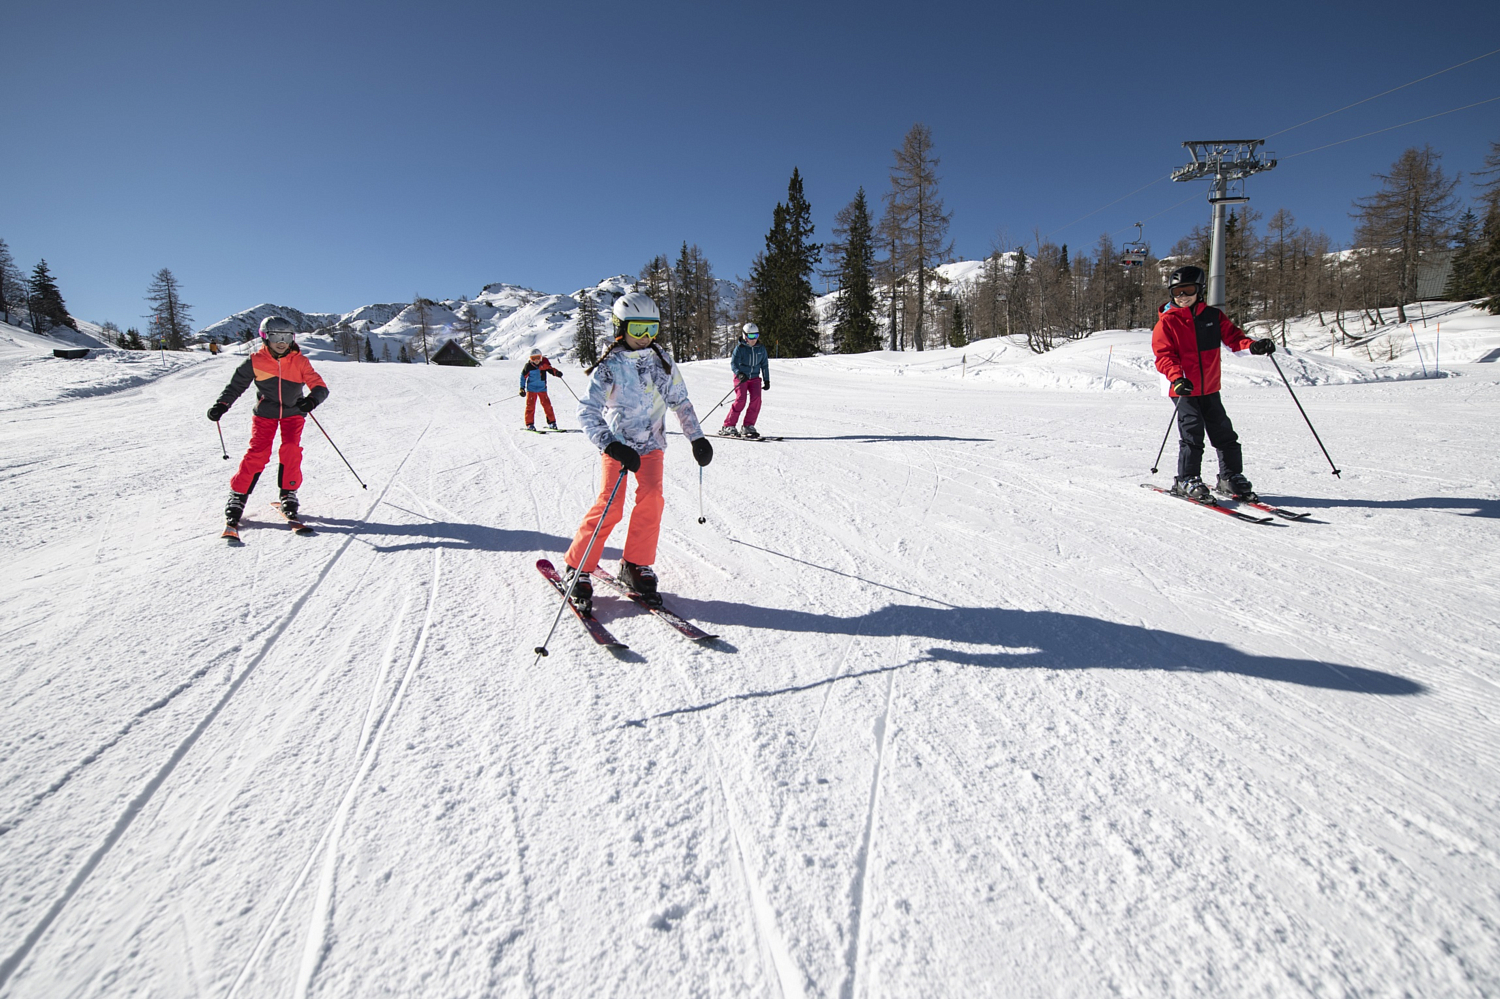 Горные лыжи с креплениями ELAN 2020-21 RC Race QS 110-120 + EL 4.5 Shift